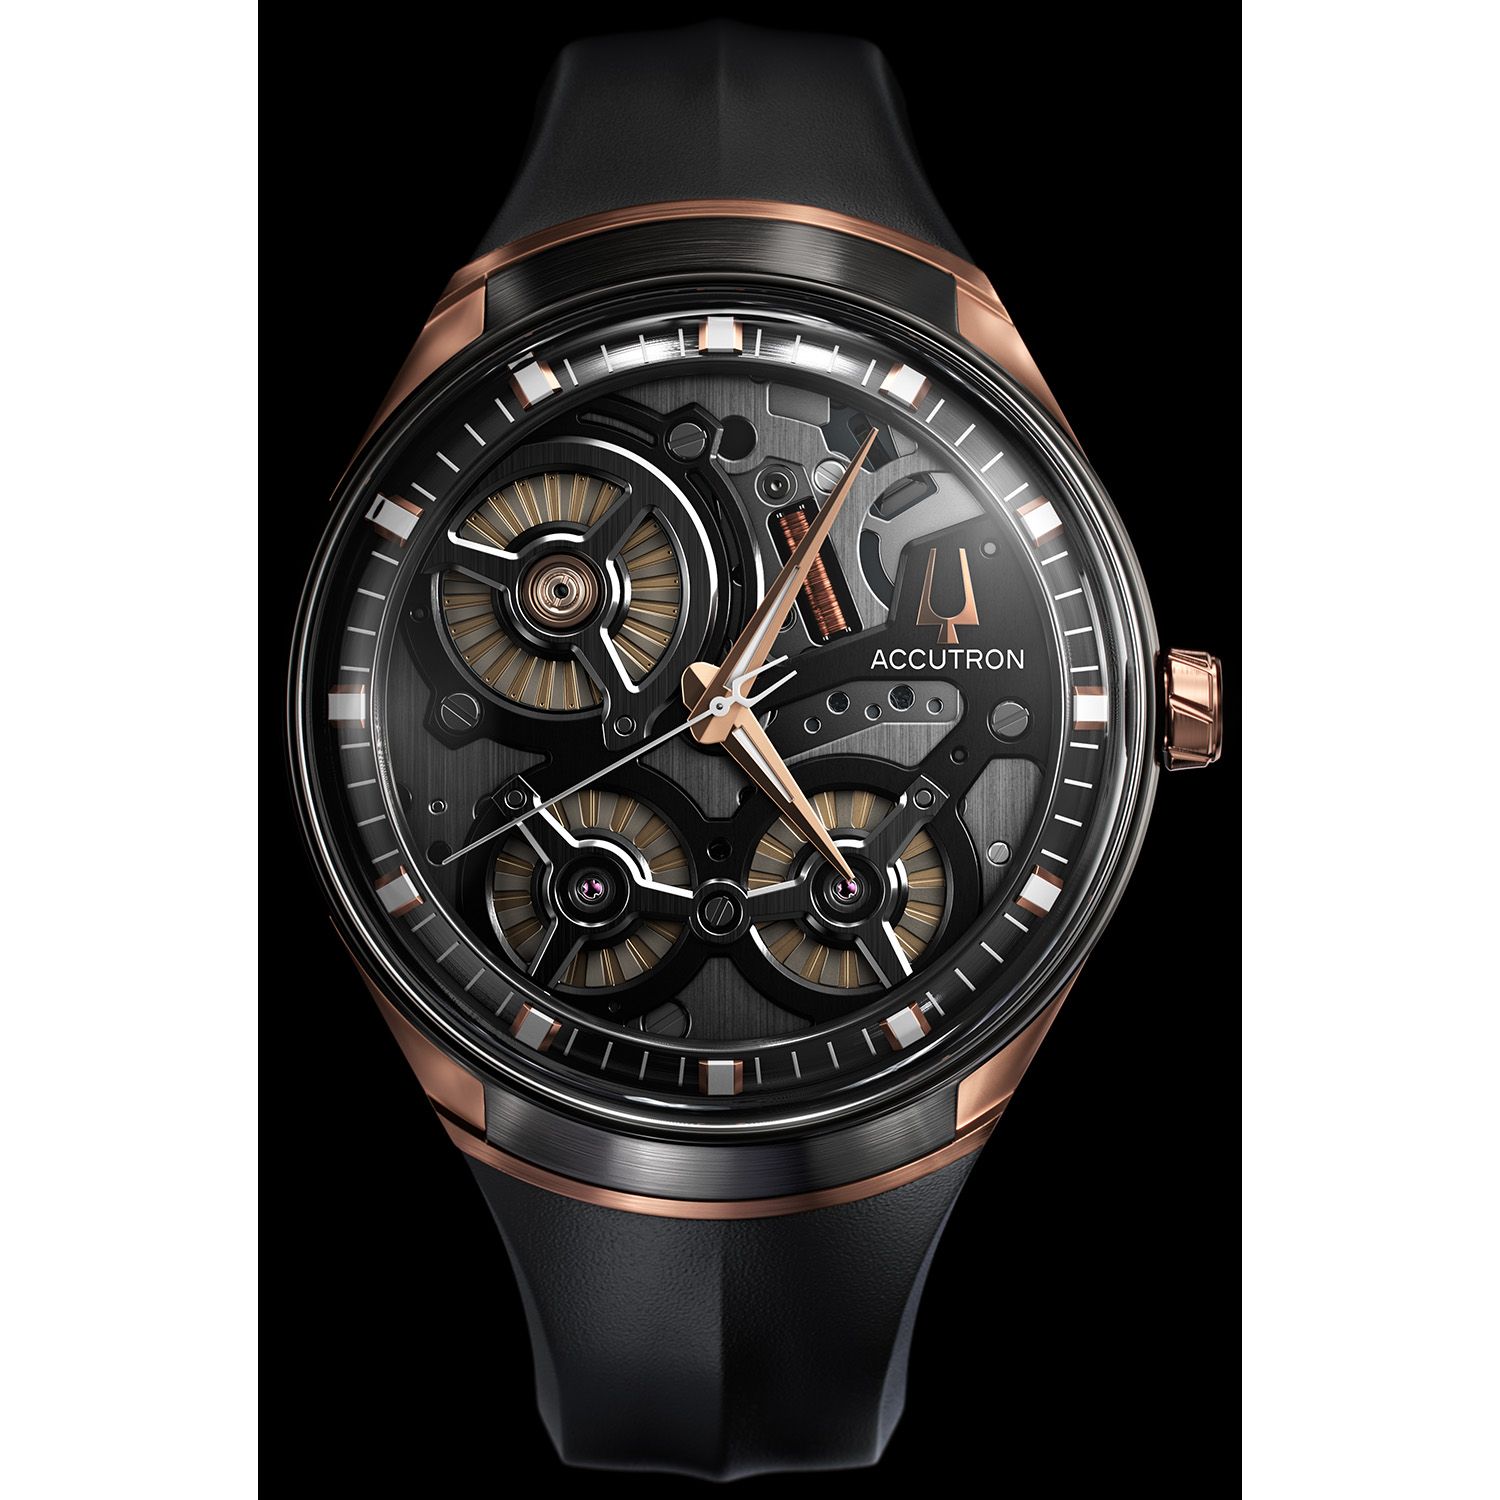 アメリカの時計ブランド「アキュトロン」 生誕60周年を機に、世界初“静電誘導”機能を搭載した【アキュトロン スペースビュー 2020】発売